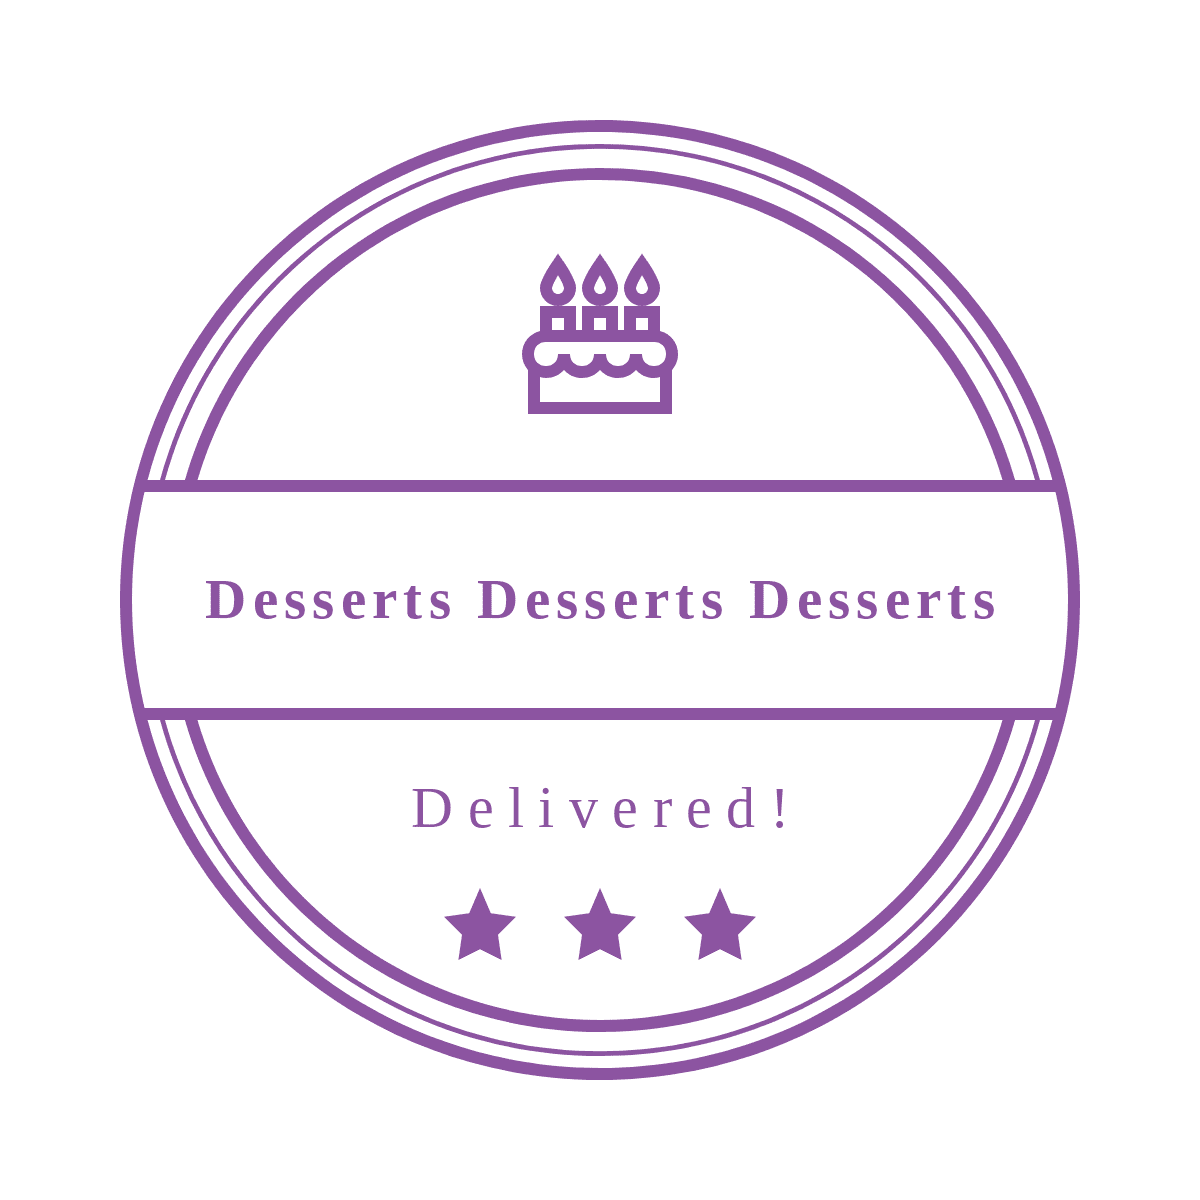 Desserts Desserts Desserts! 